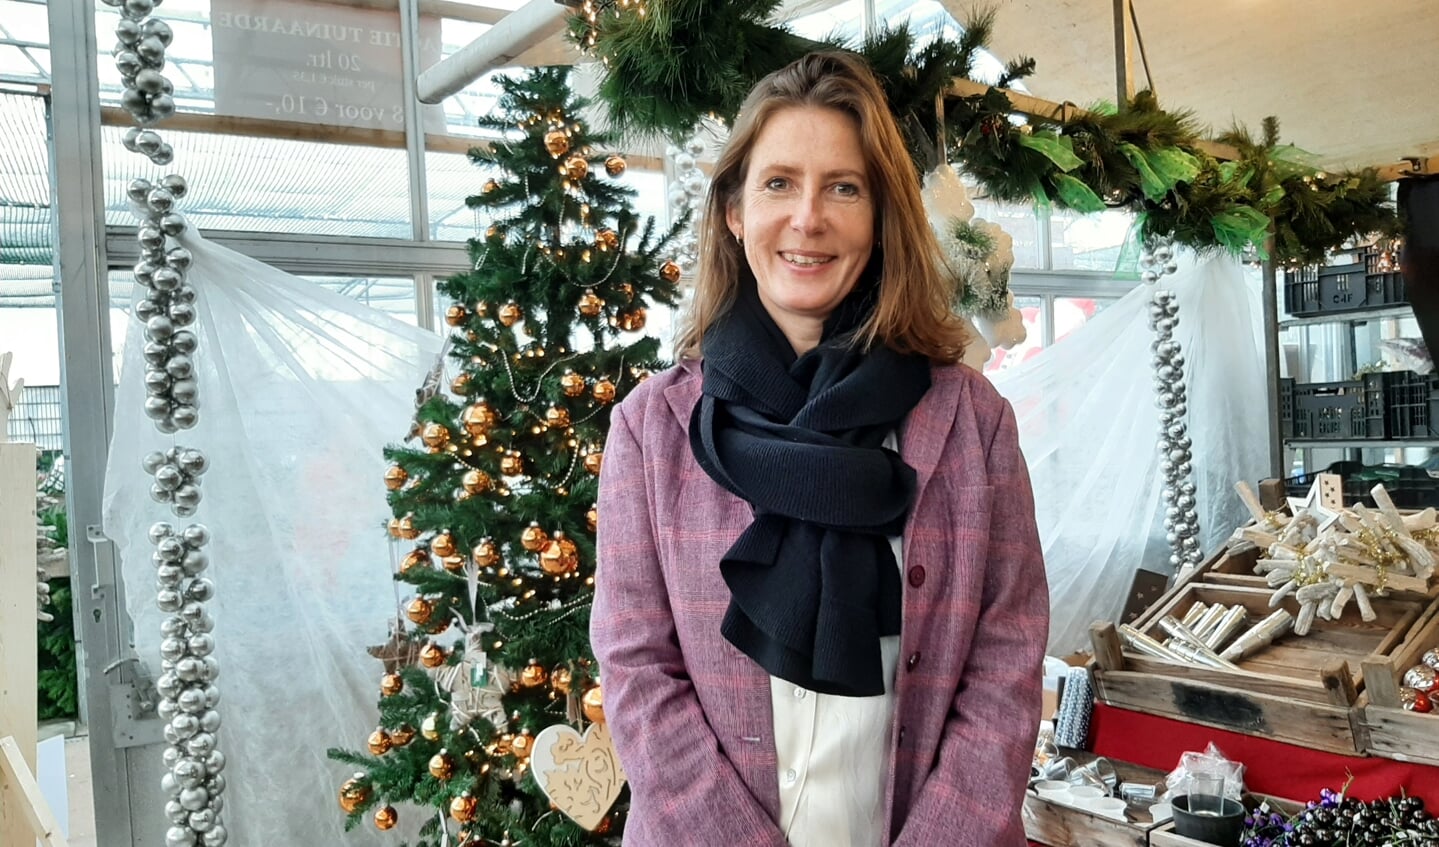 De burgemeester bracht een bezoek aan de kerstmarkt bij Kwekerij Maatwerk, toen alles nog open was. 